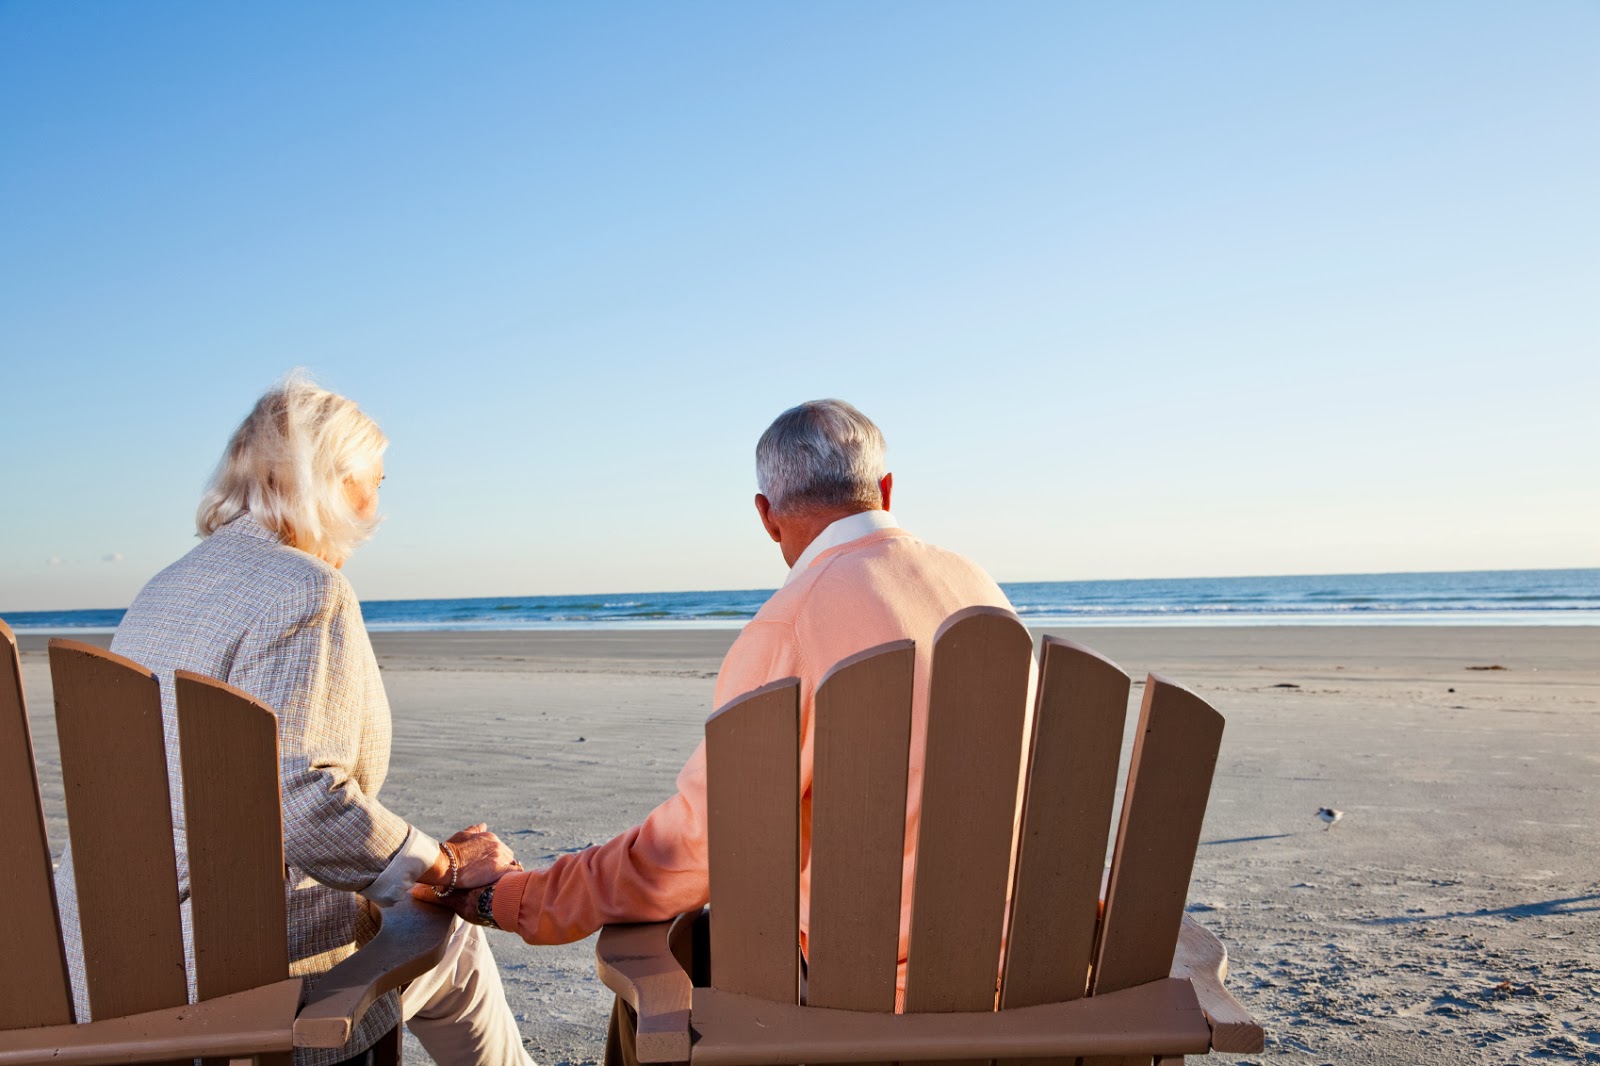  Теплое море, солнце, горячий песок: пенсионеры могут съездить на курорт за сущие копейки с начала июля 